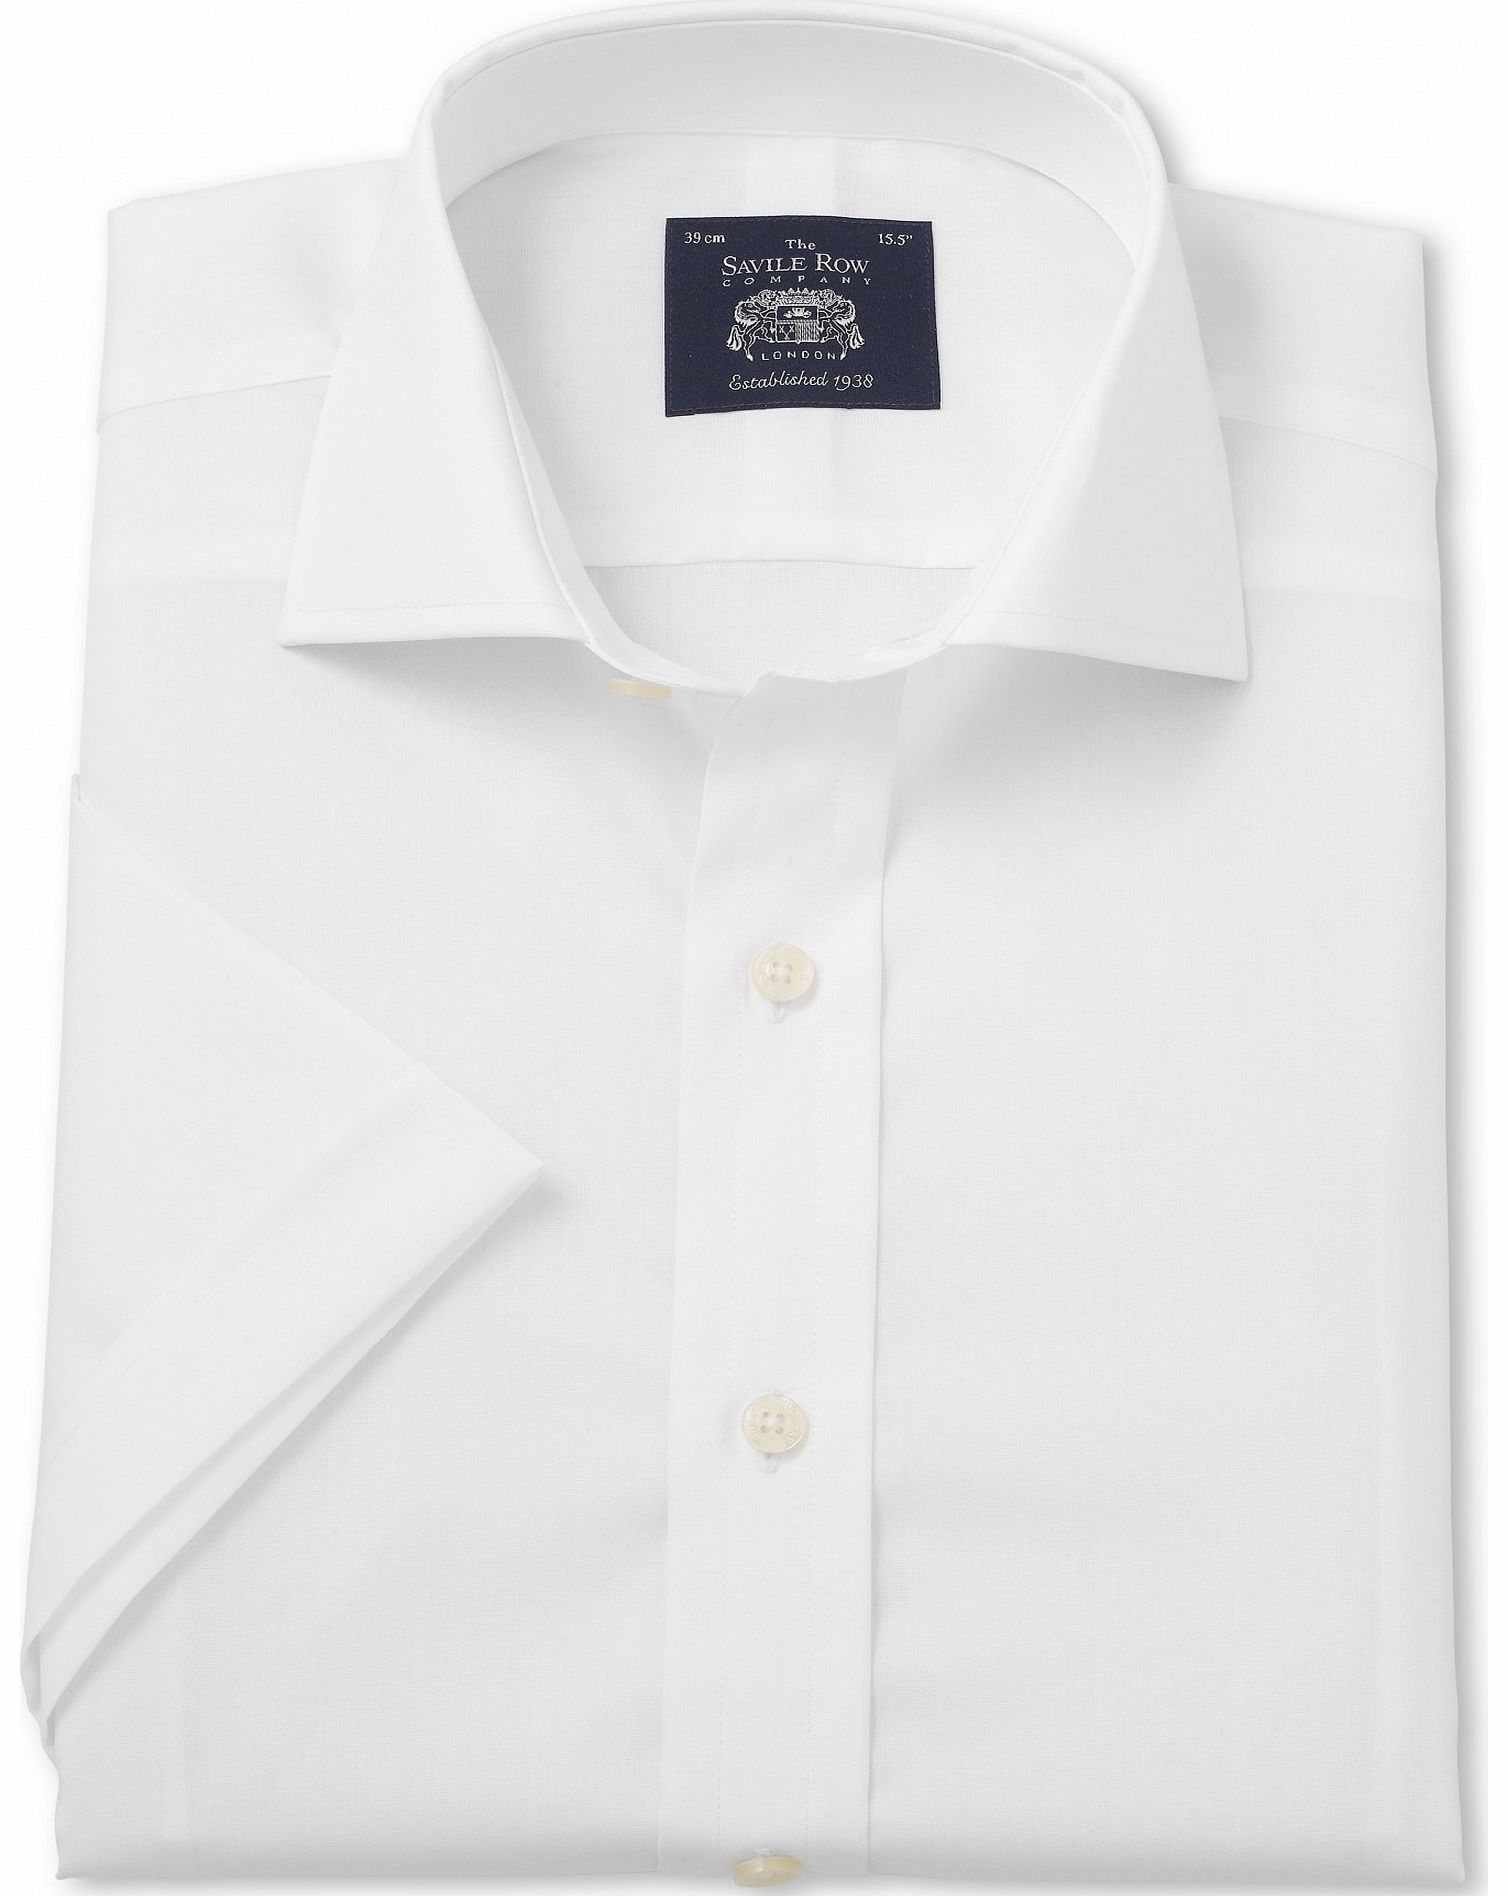 White Slim Fit Short Sleeve Shirt 17`` Short